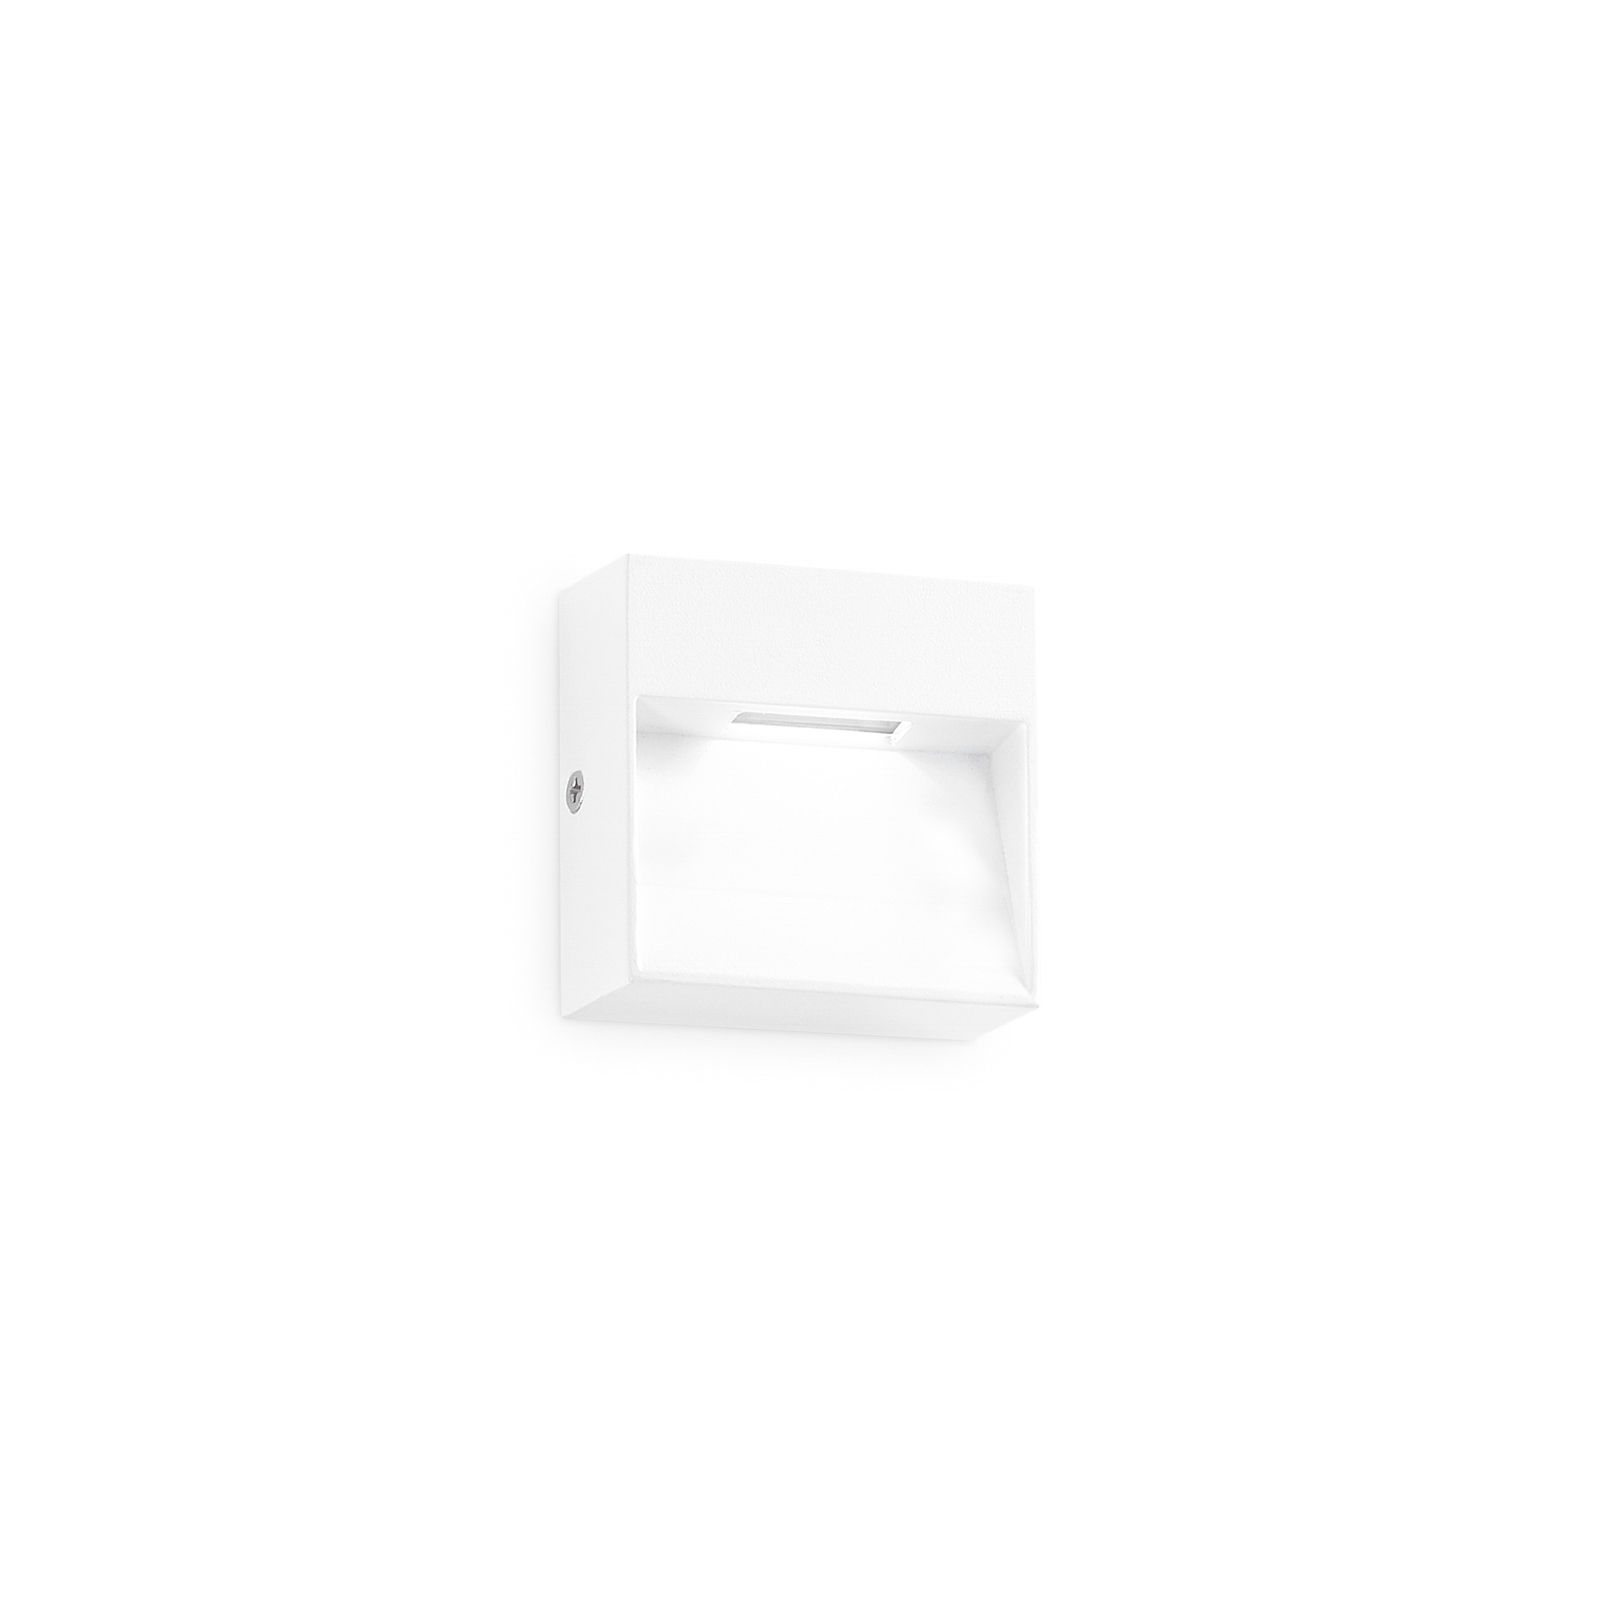 Ideal Lux applique d'extérieur LED Dedra, blanc, 10 x 10 cm